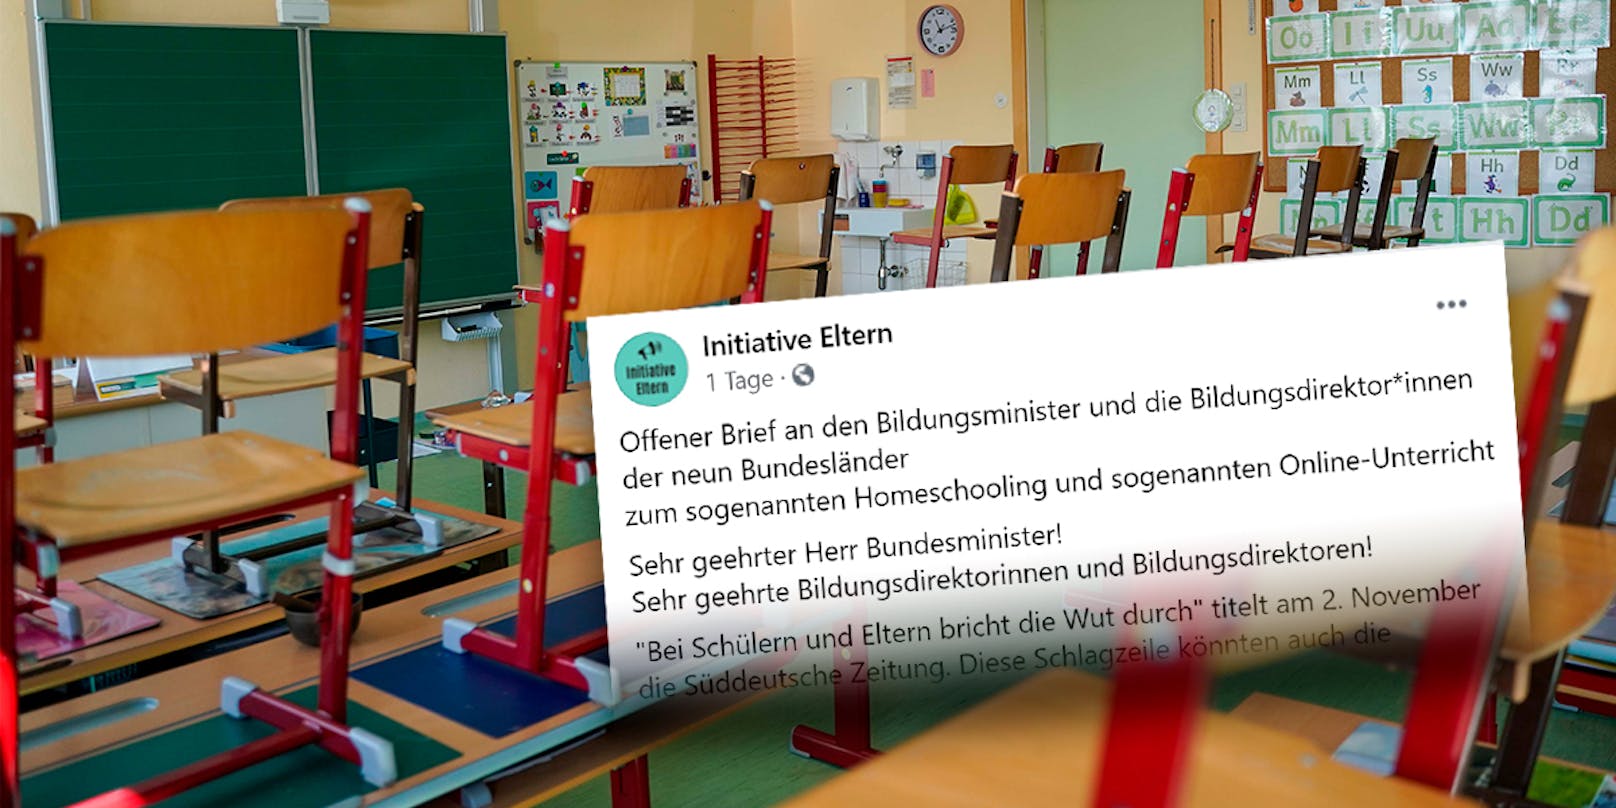 Die "Initiative Eltern" kritisiert das Bildungsministerium scharf